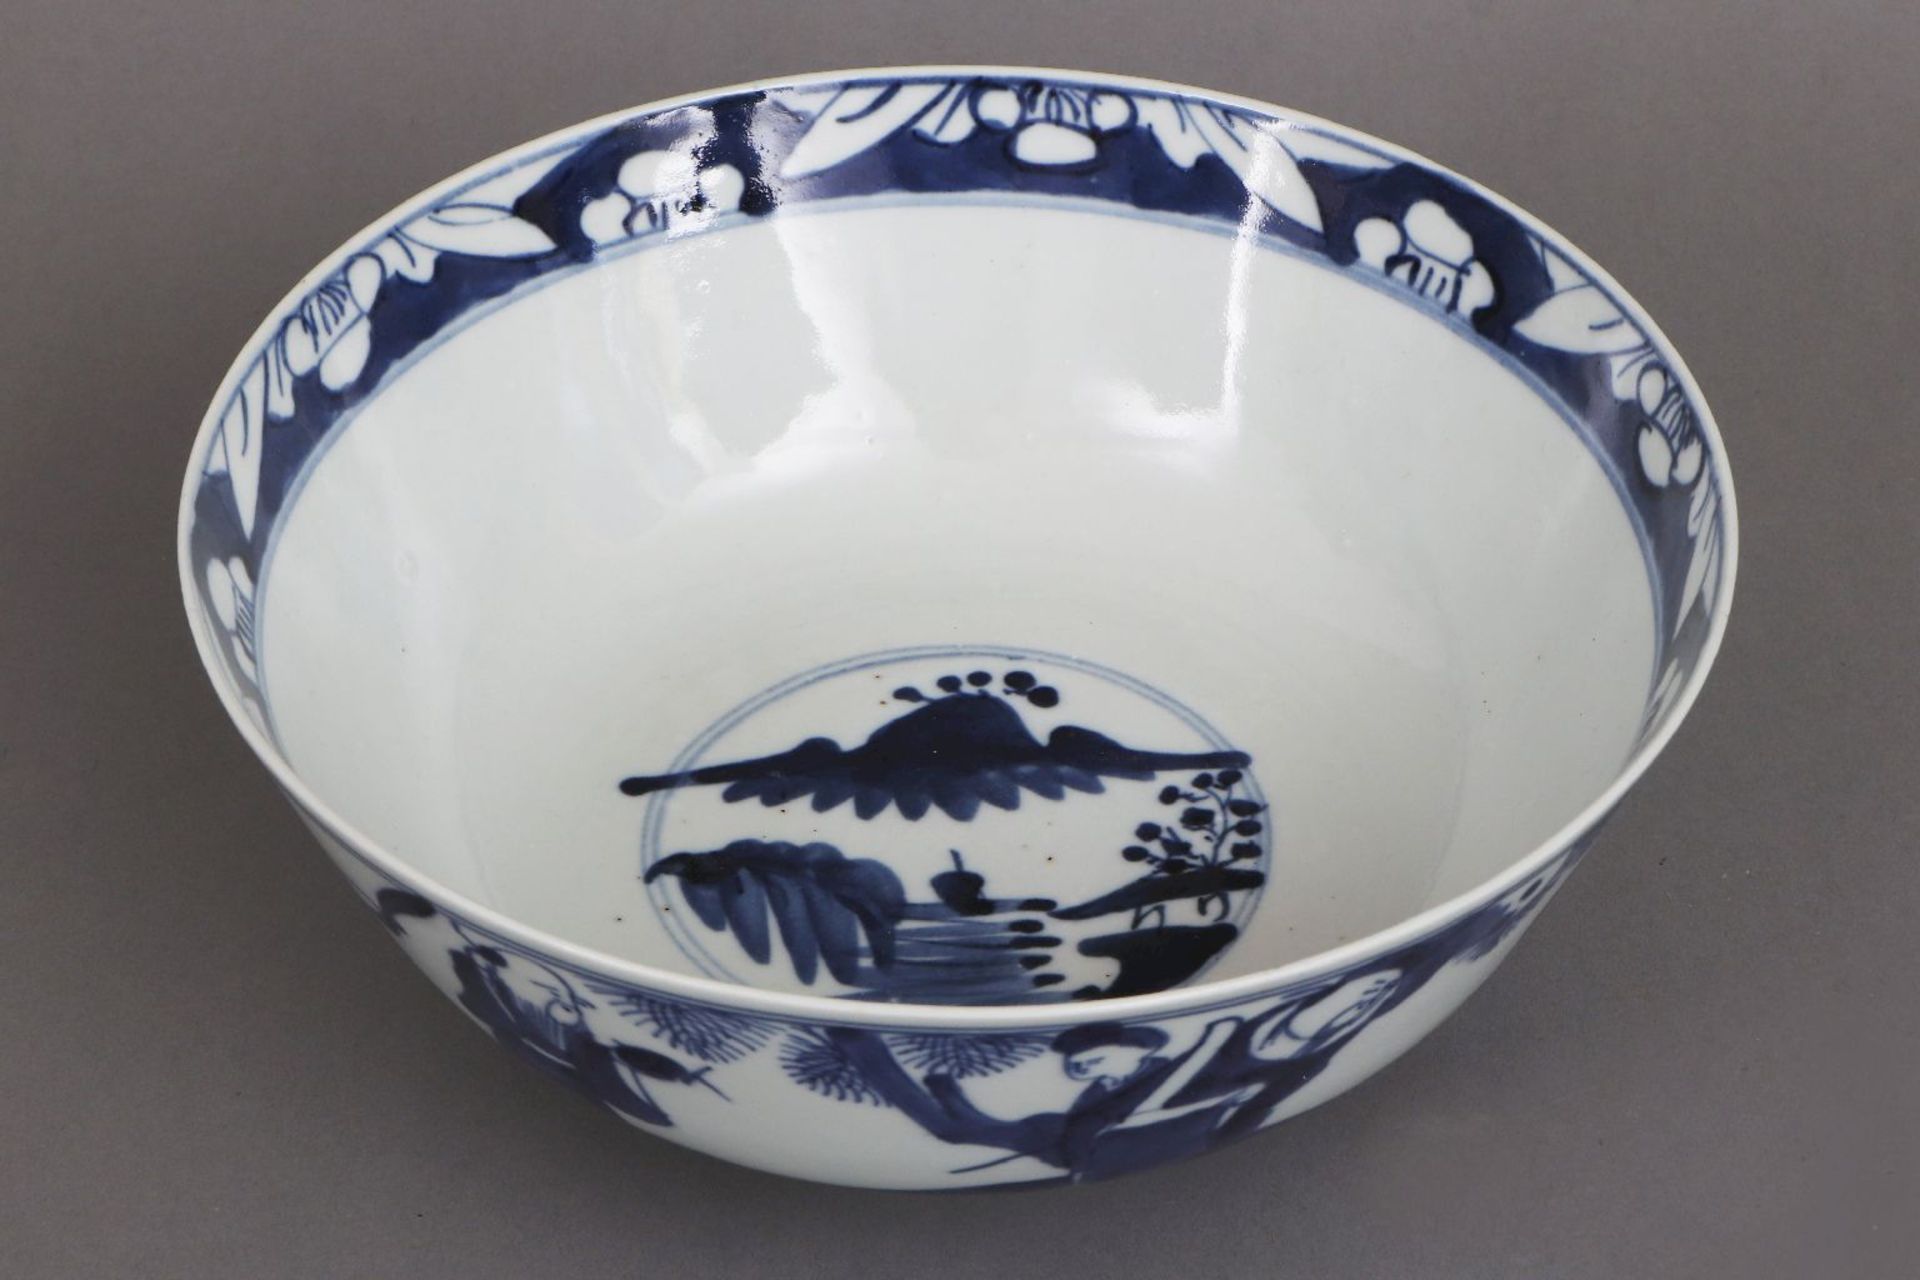 Chinesische Porzellanschale mit Blaumalerei im Stile Ming - Image 2 of 6